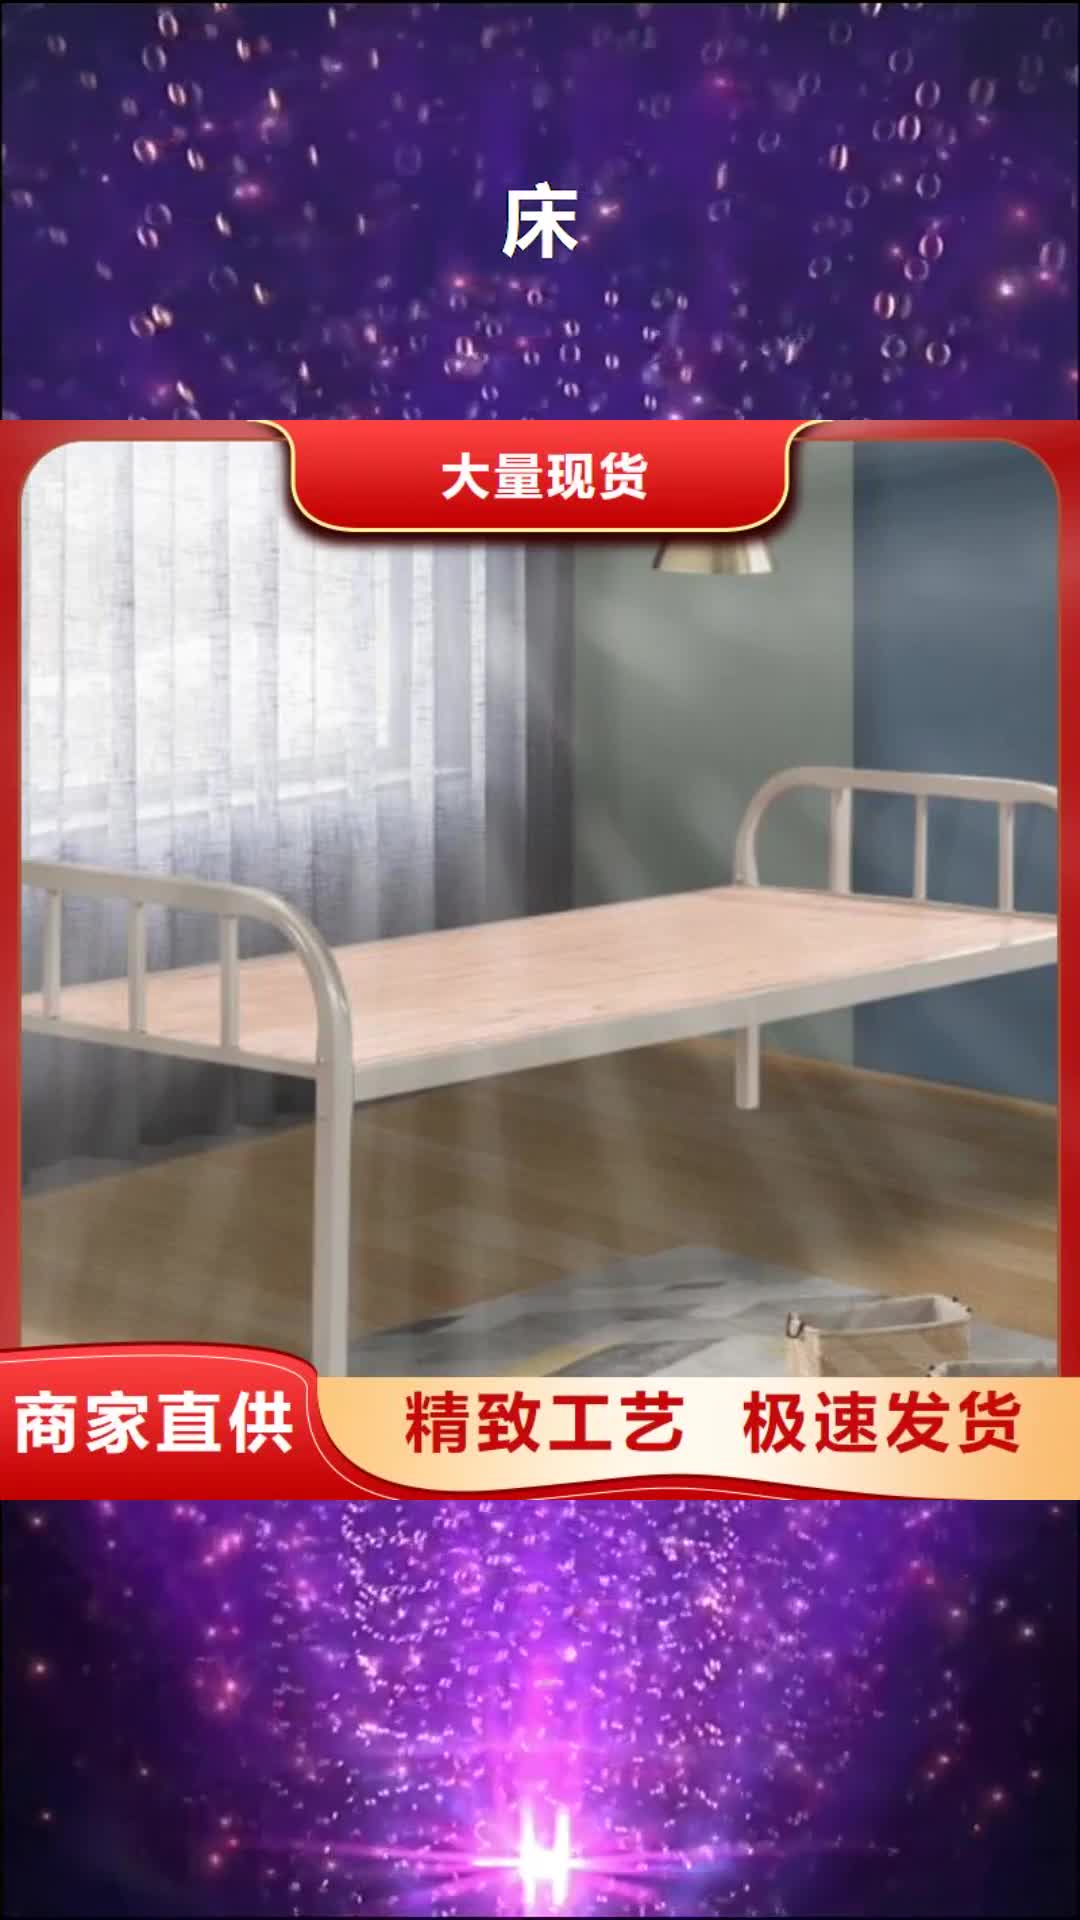 武威【床】,不锈钢信报箱品质可靠